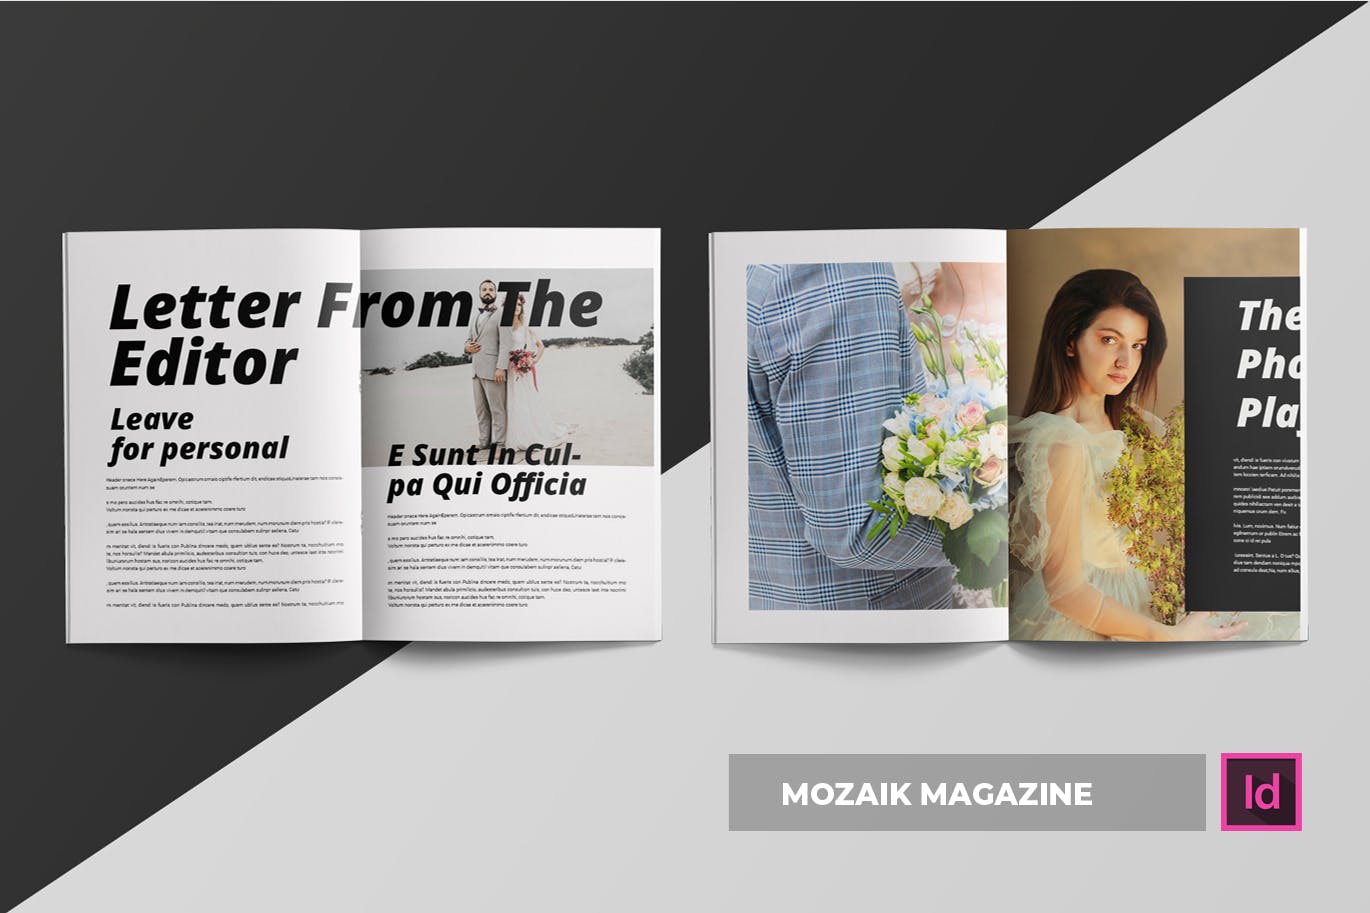 时尚生活主题第一素材精选杂志排版设计INDD模板 Mozaik | Magazine Template插图(3)